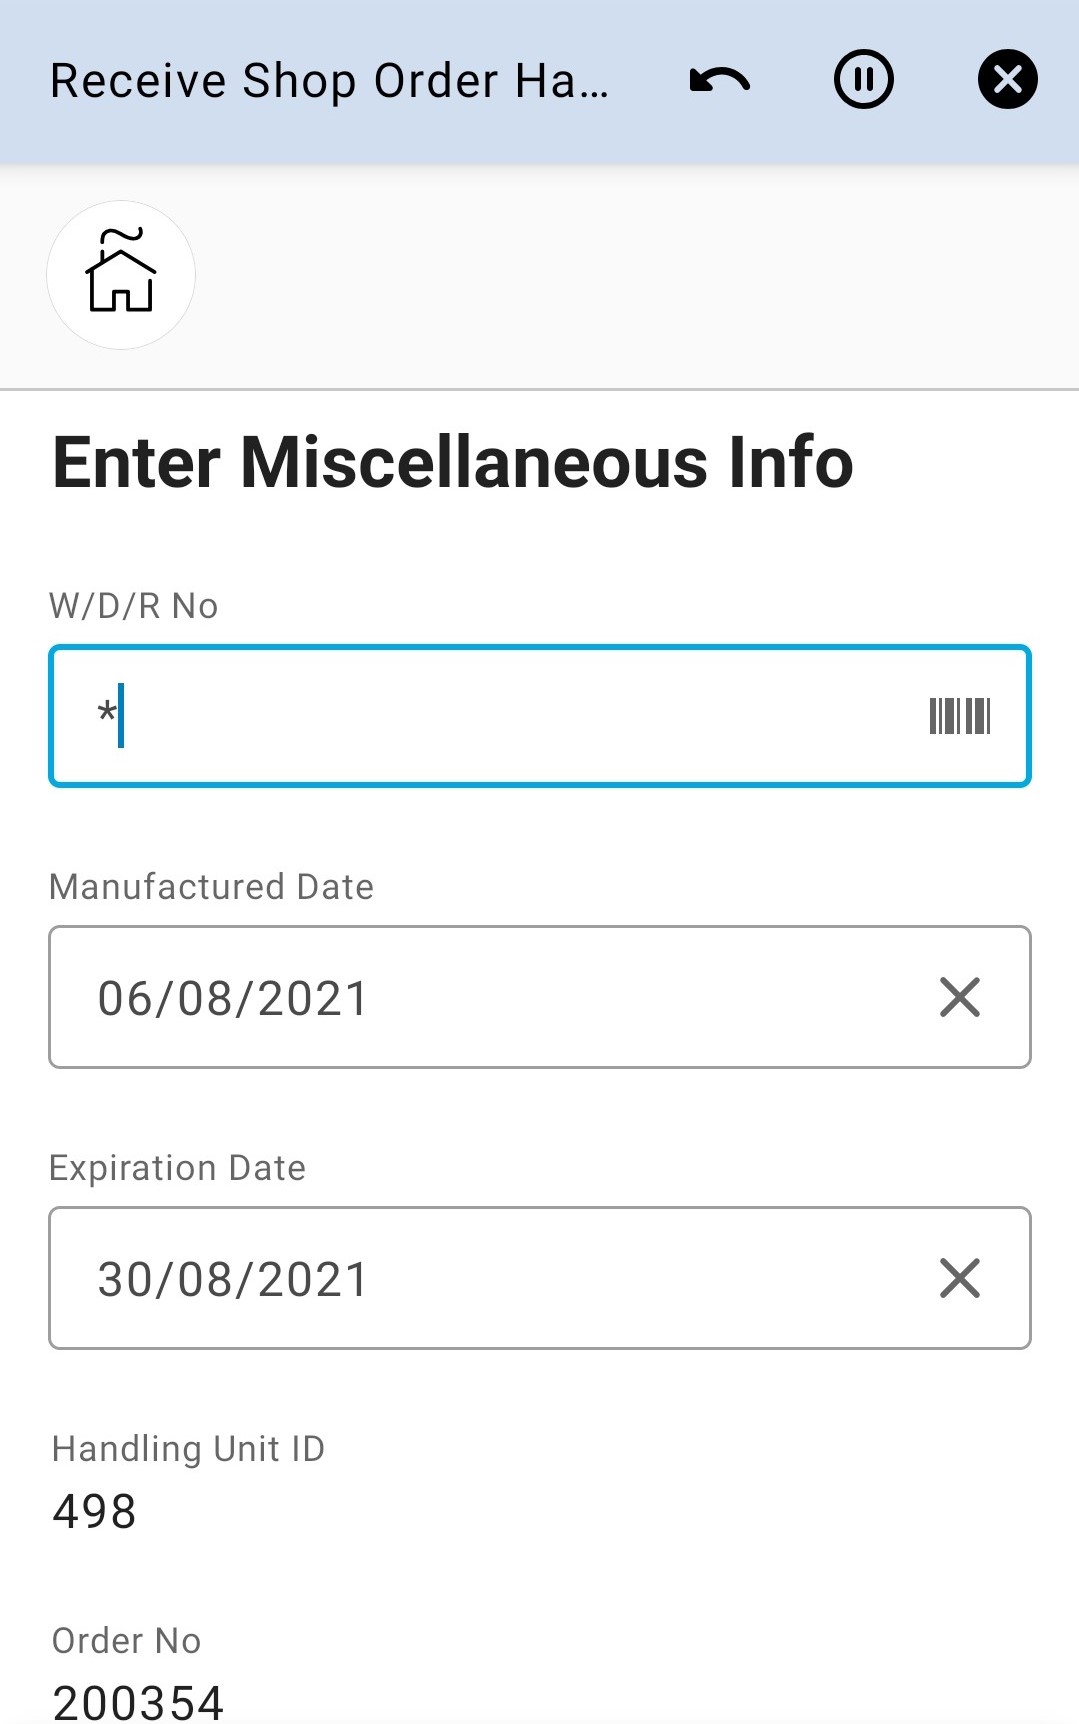 Enter Misc Info